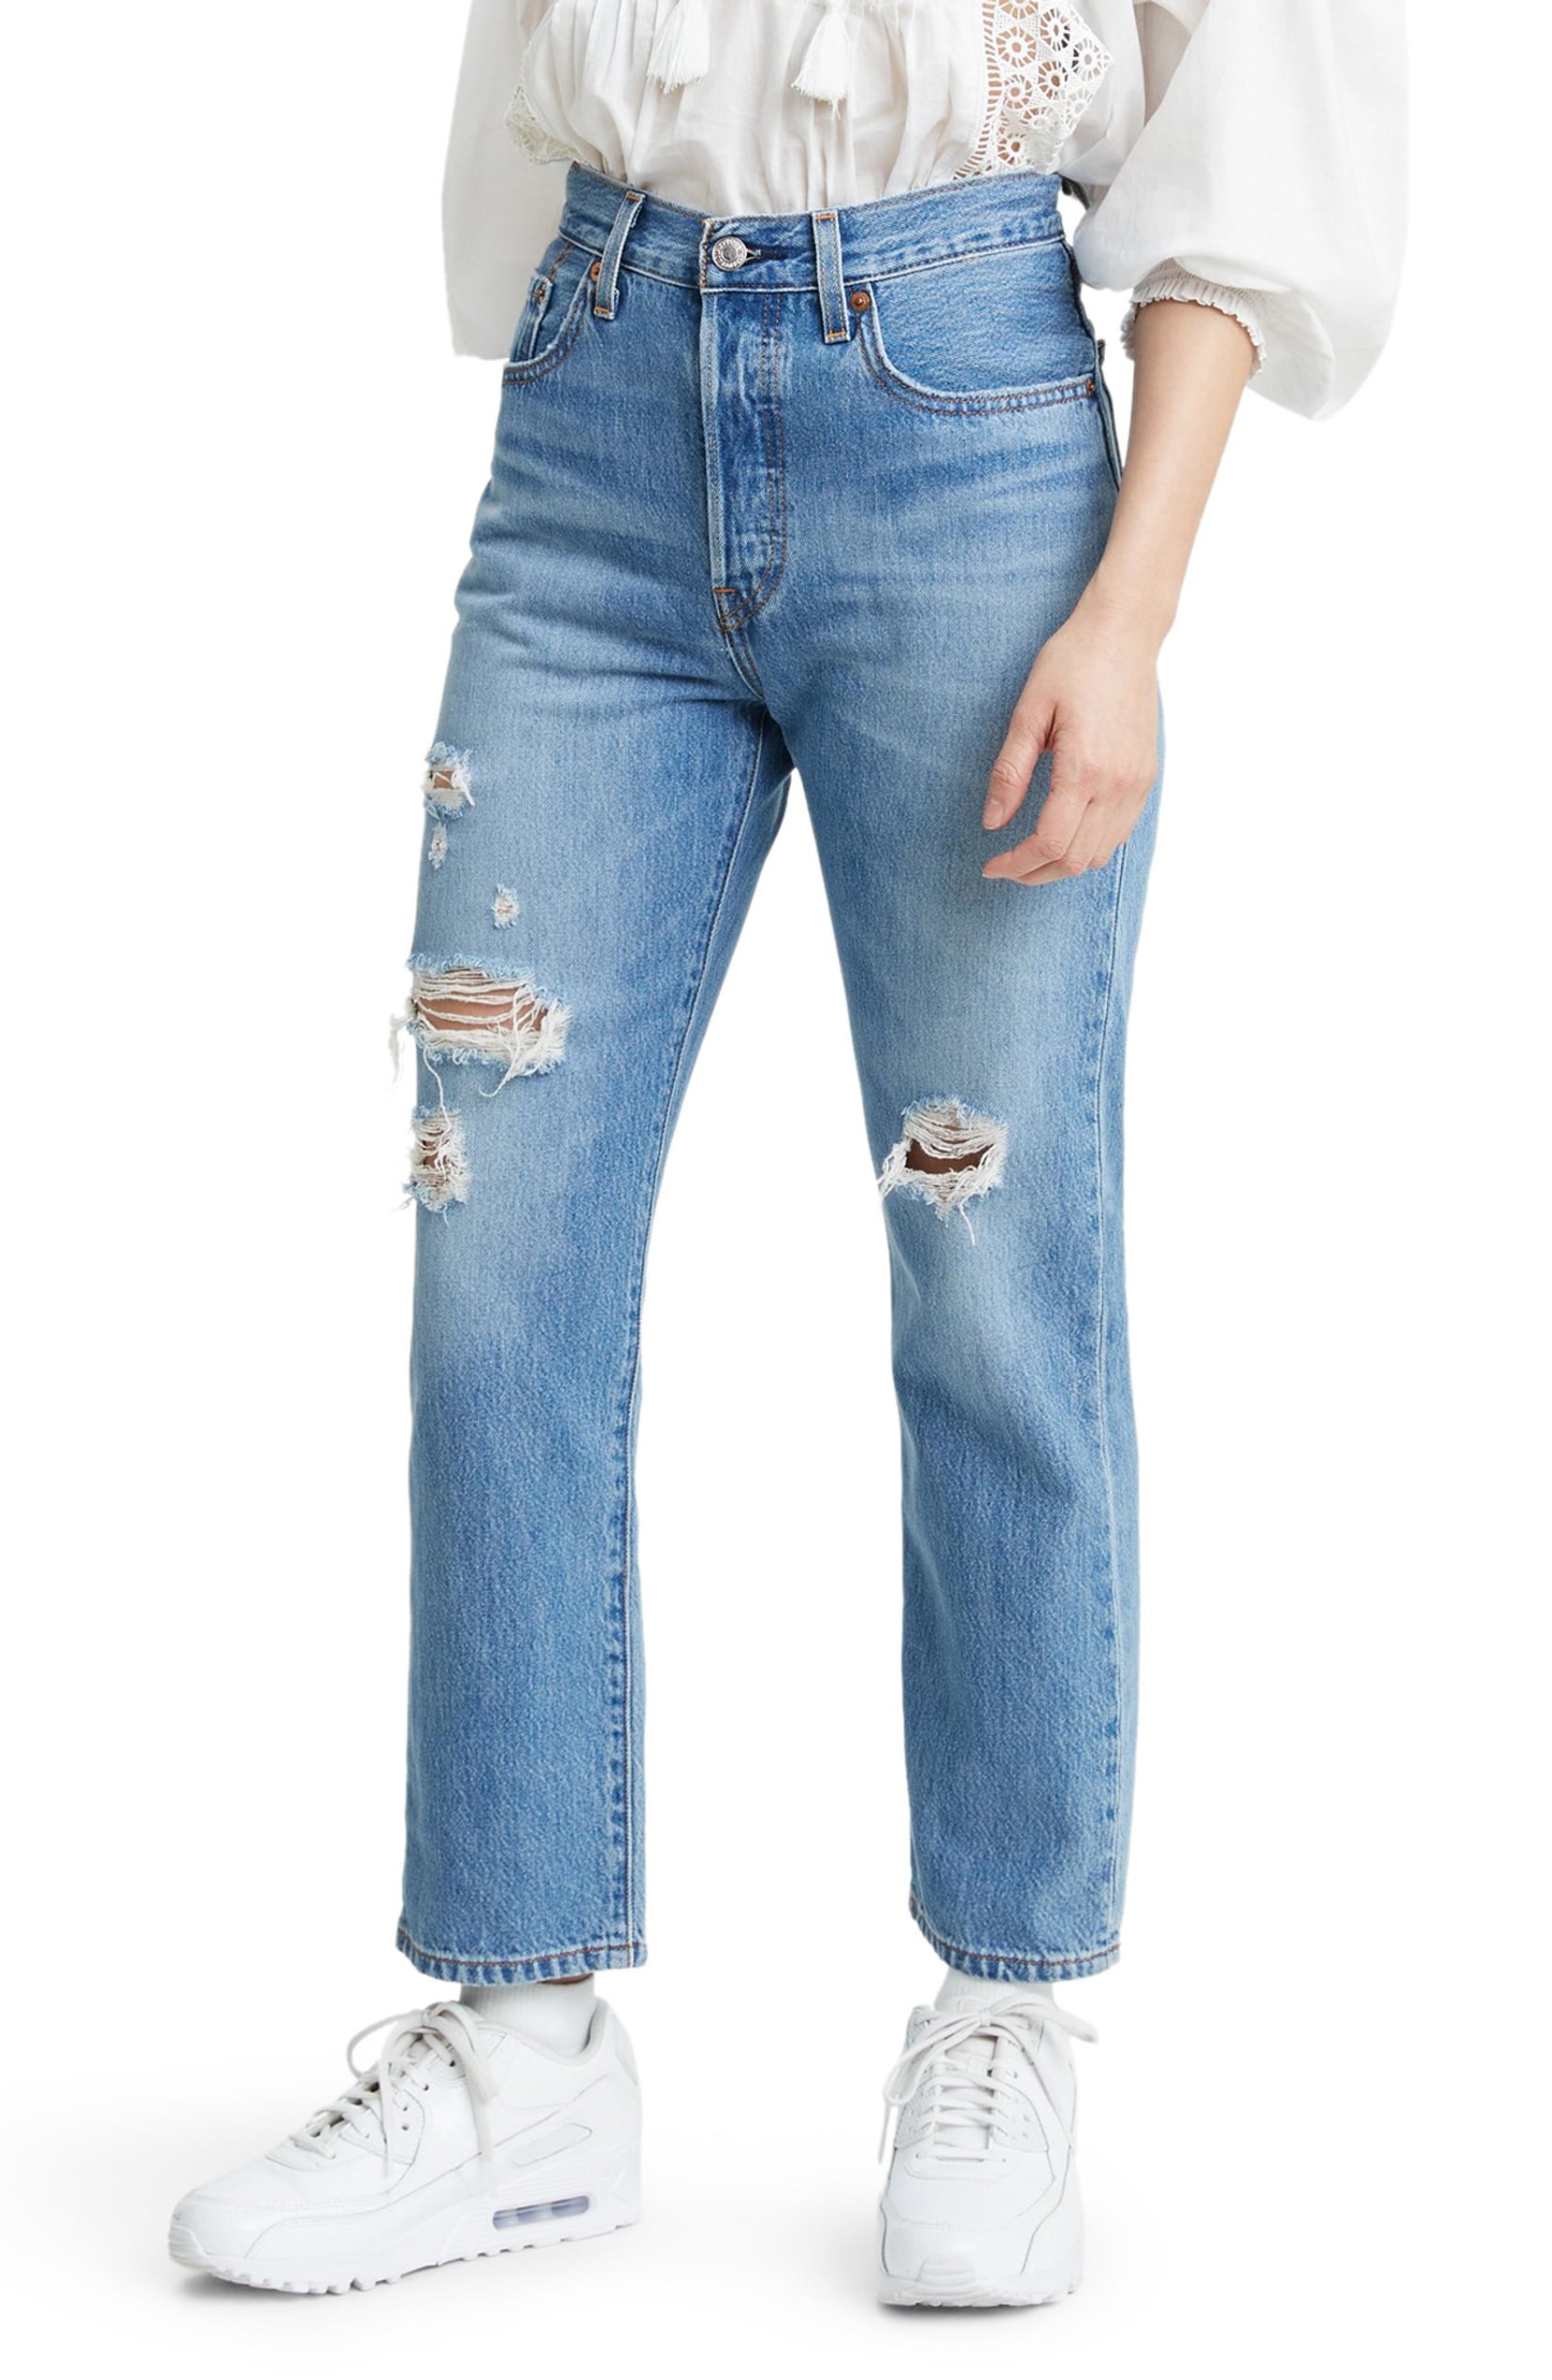 Leviâs + 501Â® Ripped High Waist Crop Straight Leg Jeans